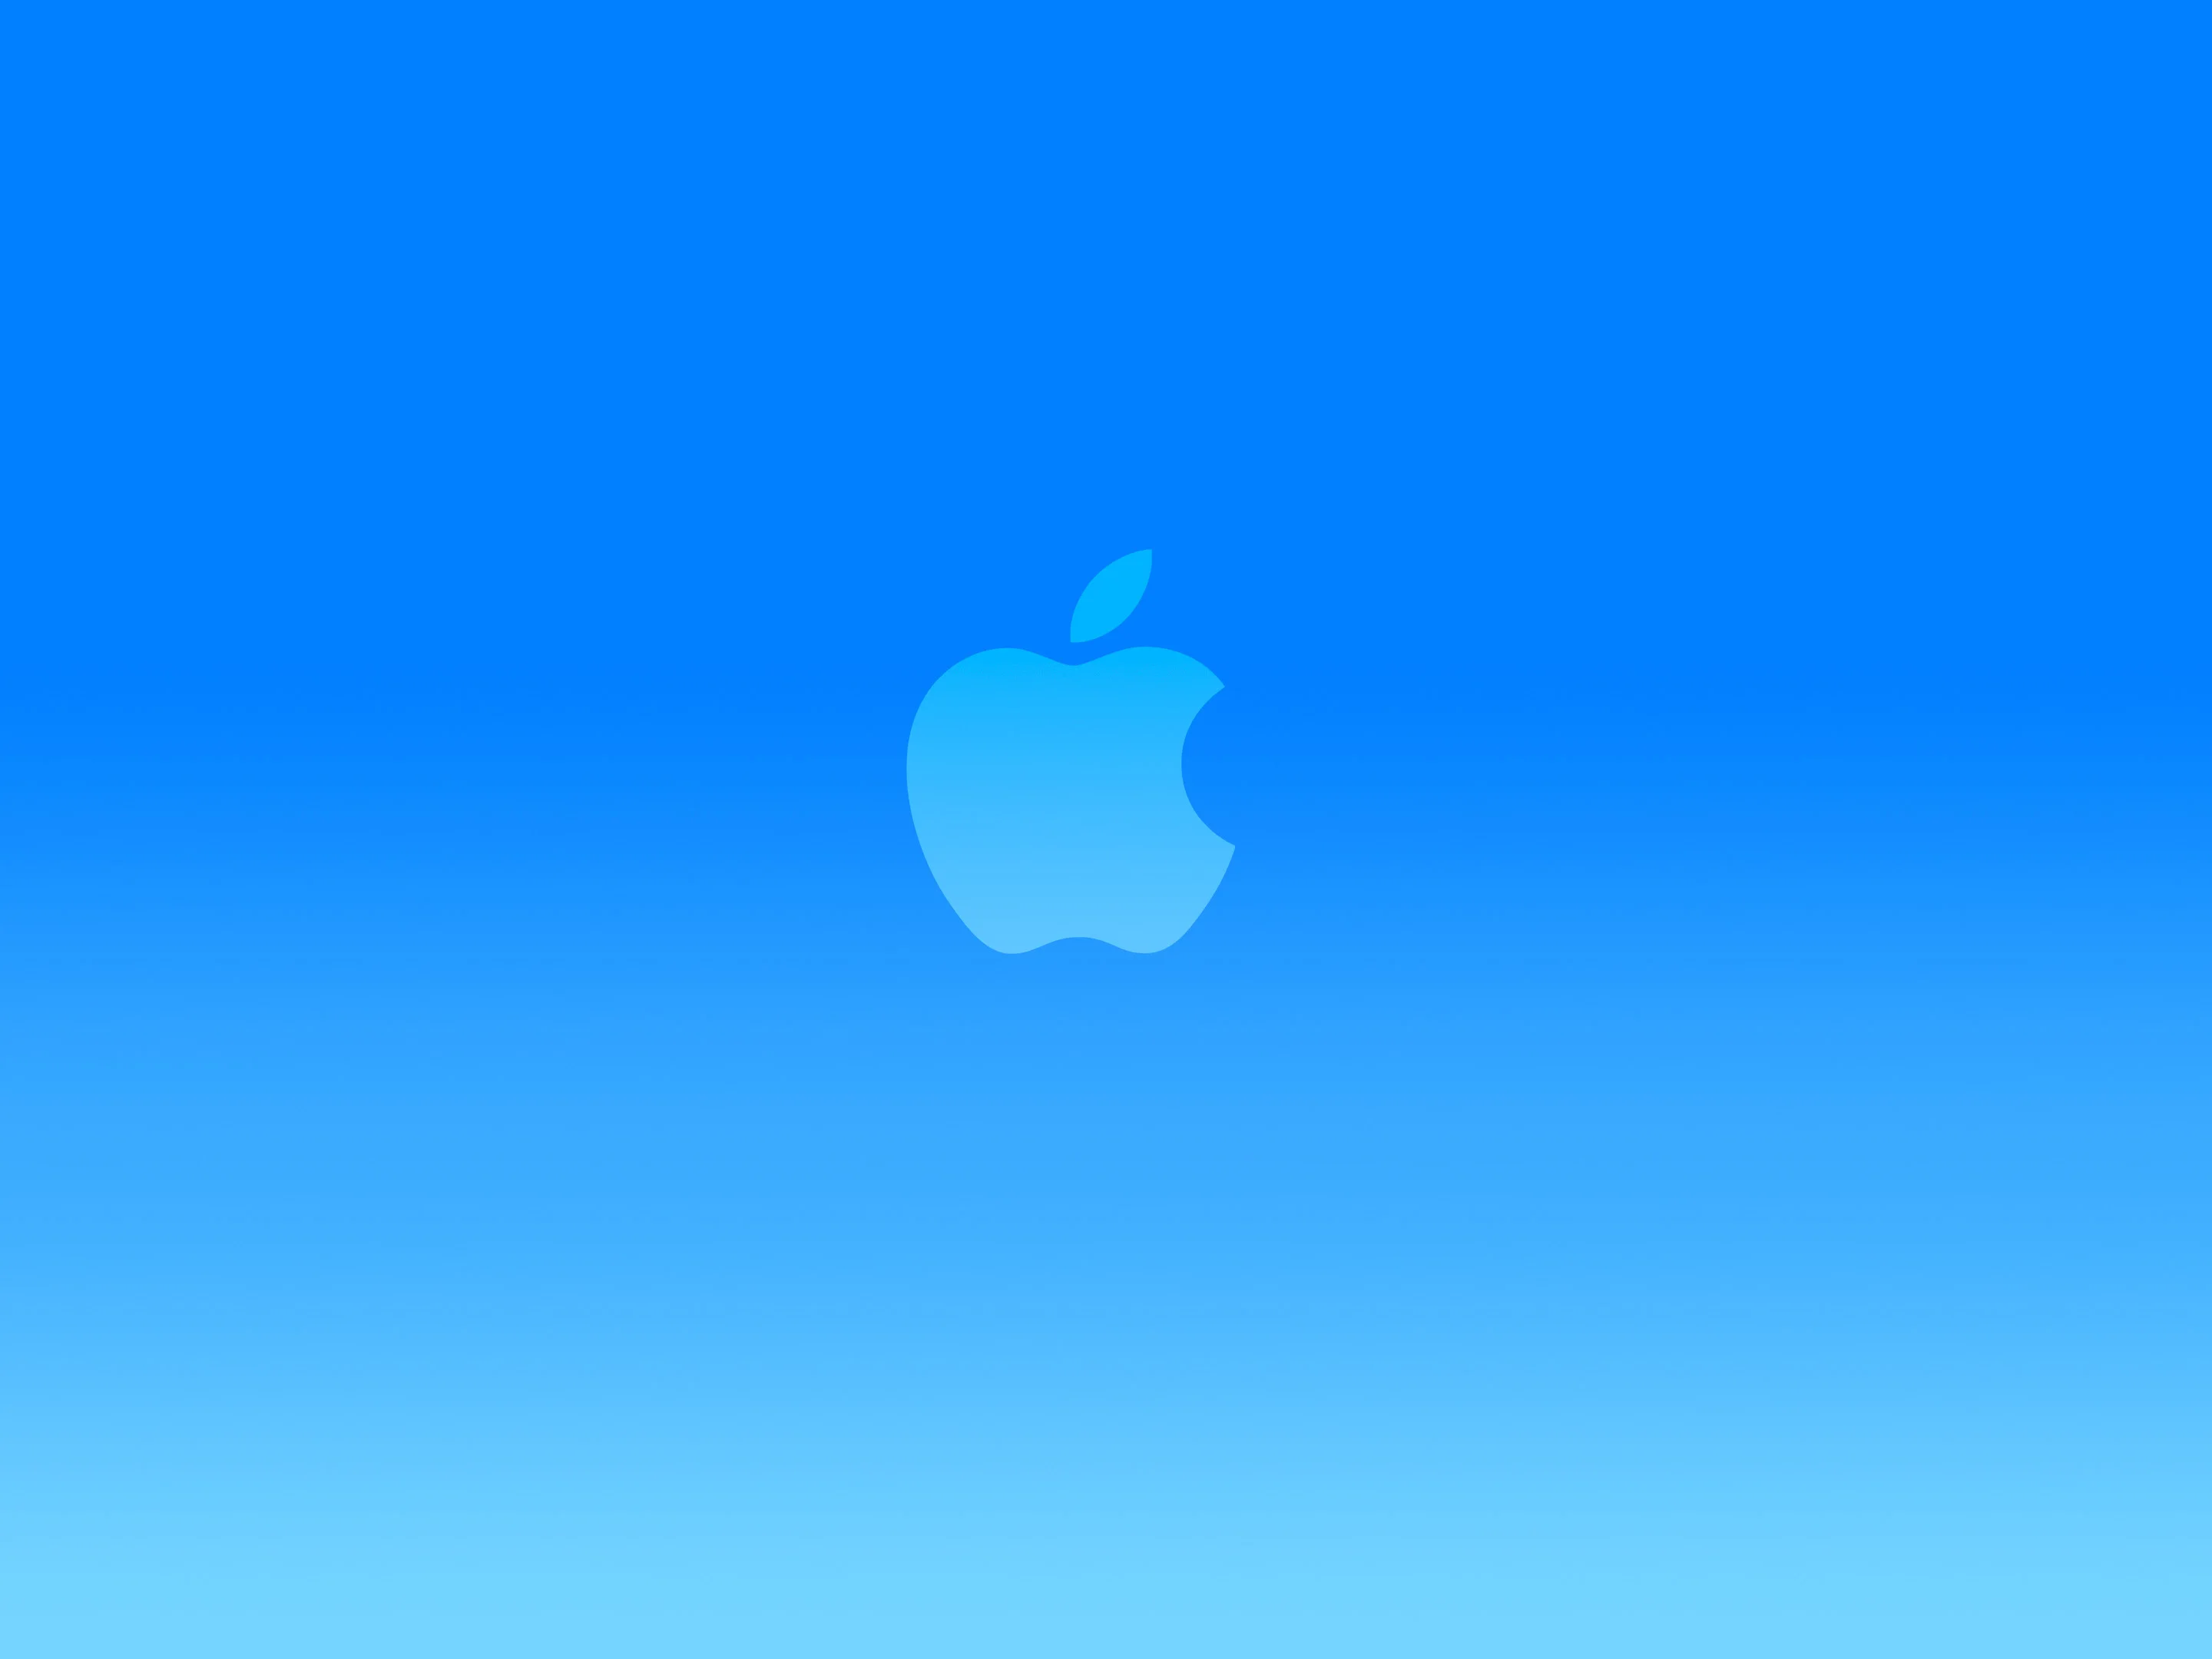 bright-blue-apple-logo-wallpaper